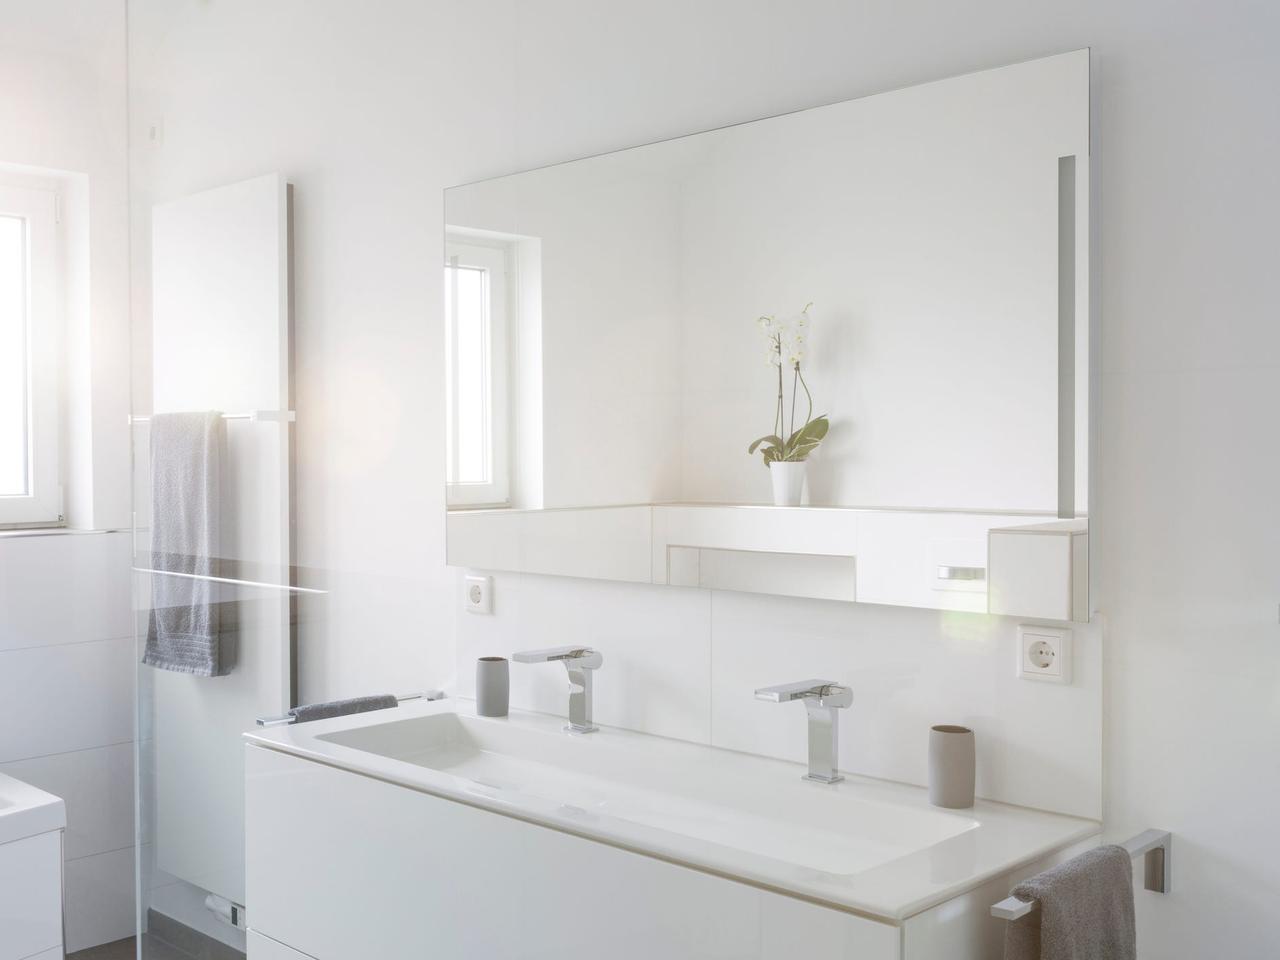 比白色更浅的颜色在浴室中越来越受欢迎。